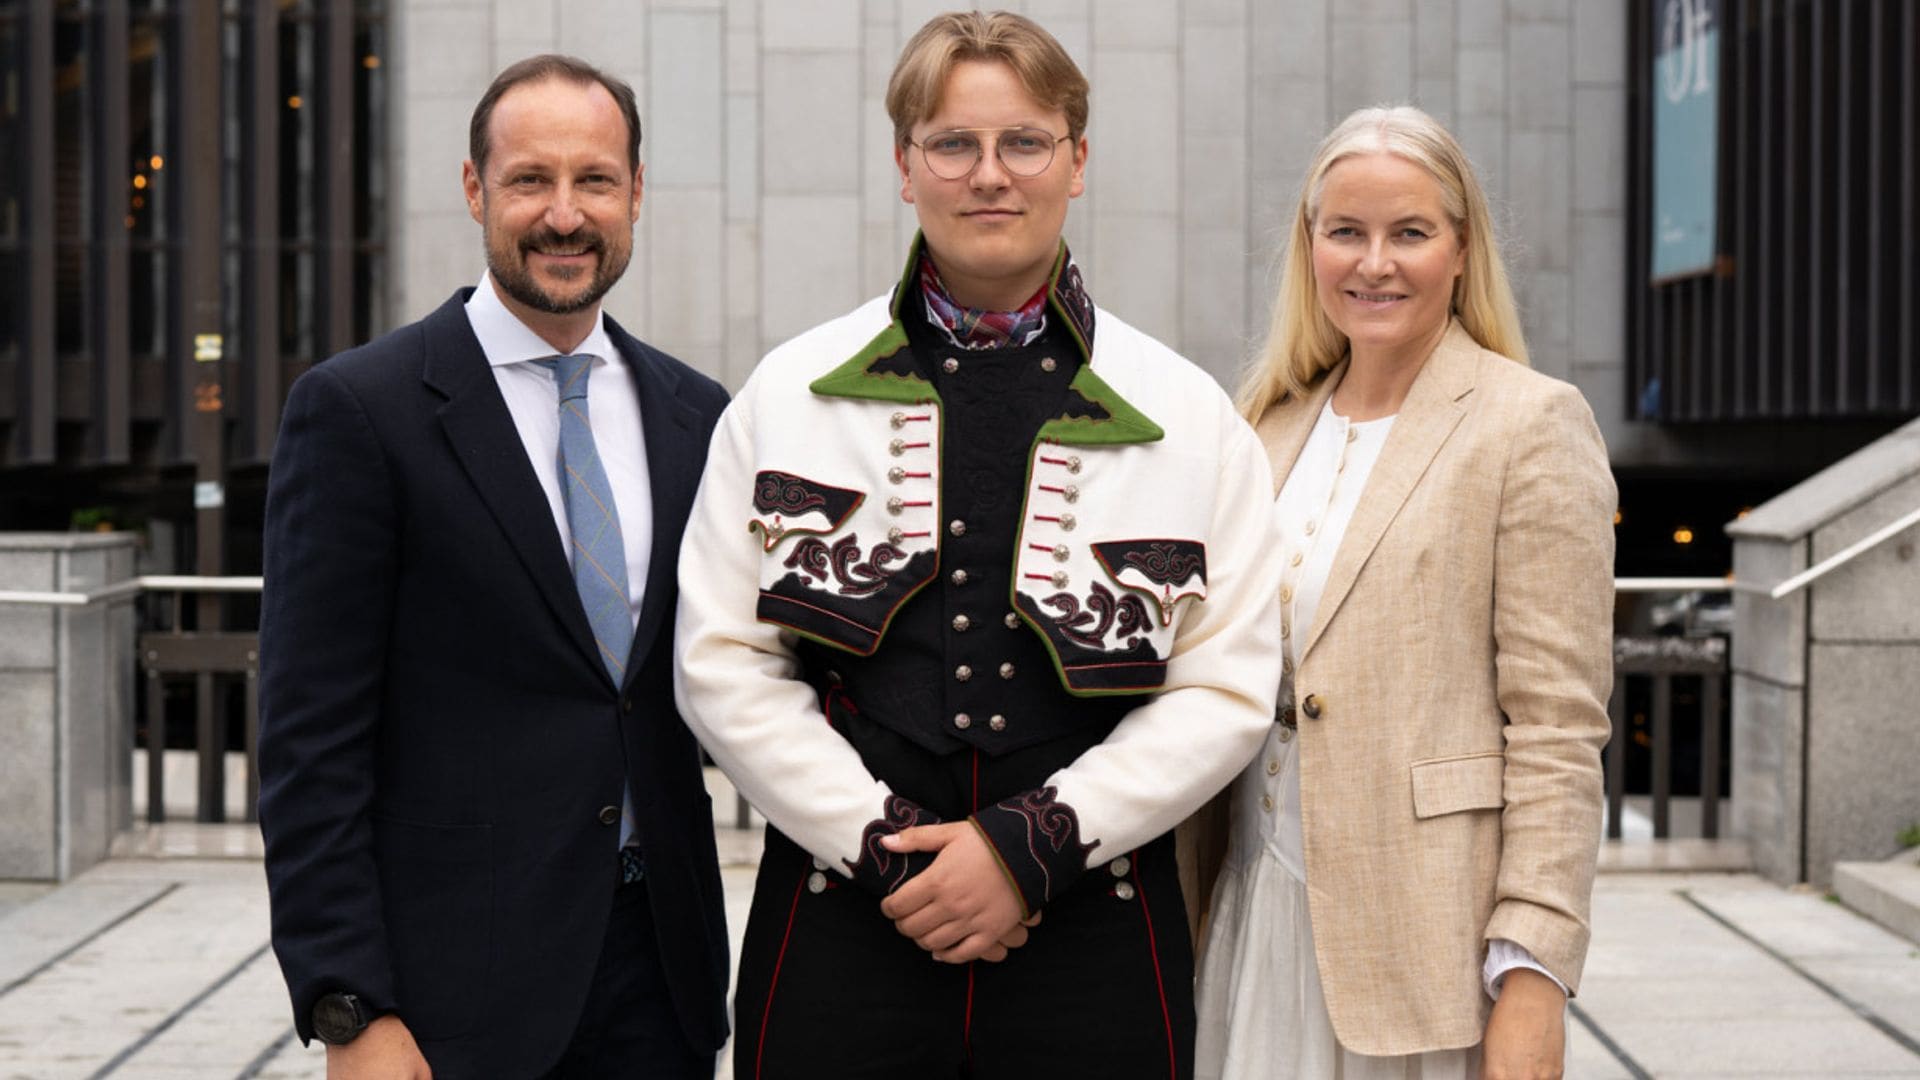 Sverre Magnus de Noruega se gradúa, acompañado por sus padres y con su 'bunad' favorito